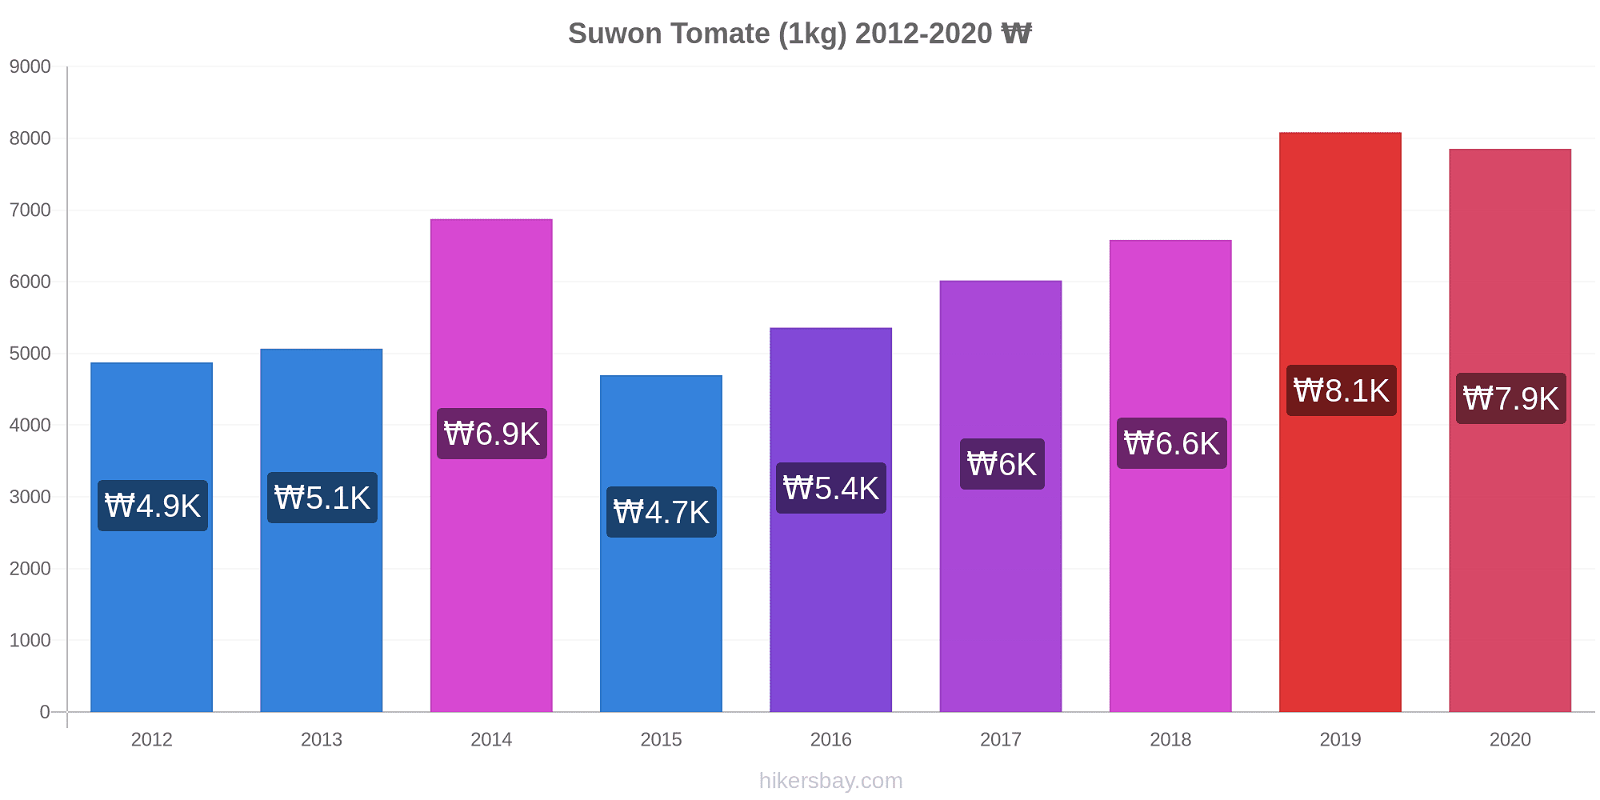 Suwon cambios de precios Tomate (1kg) hikersbay.com